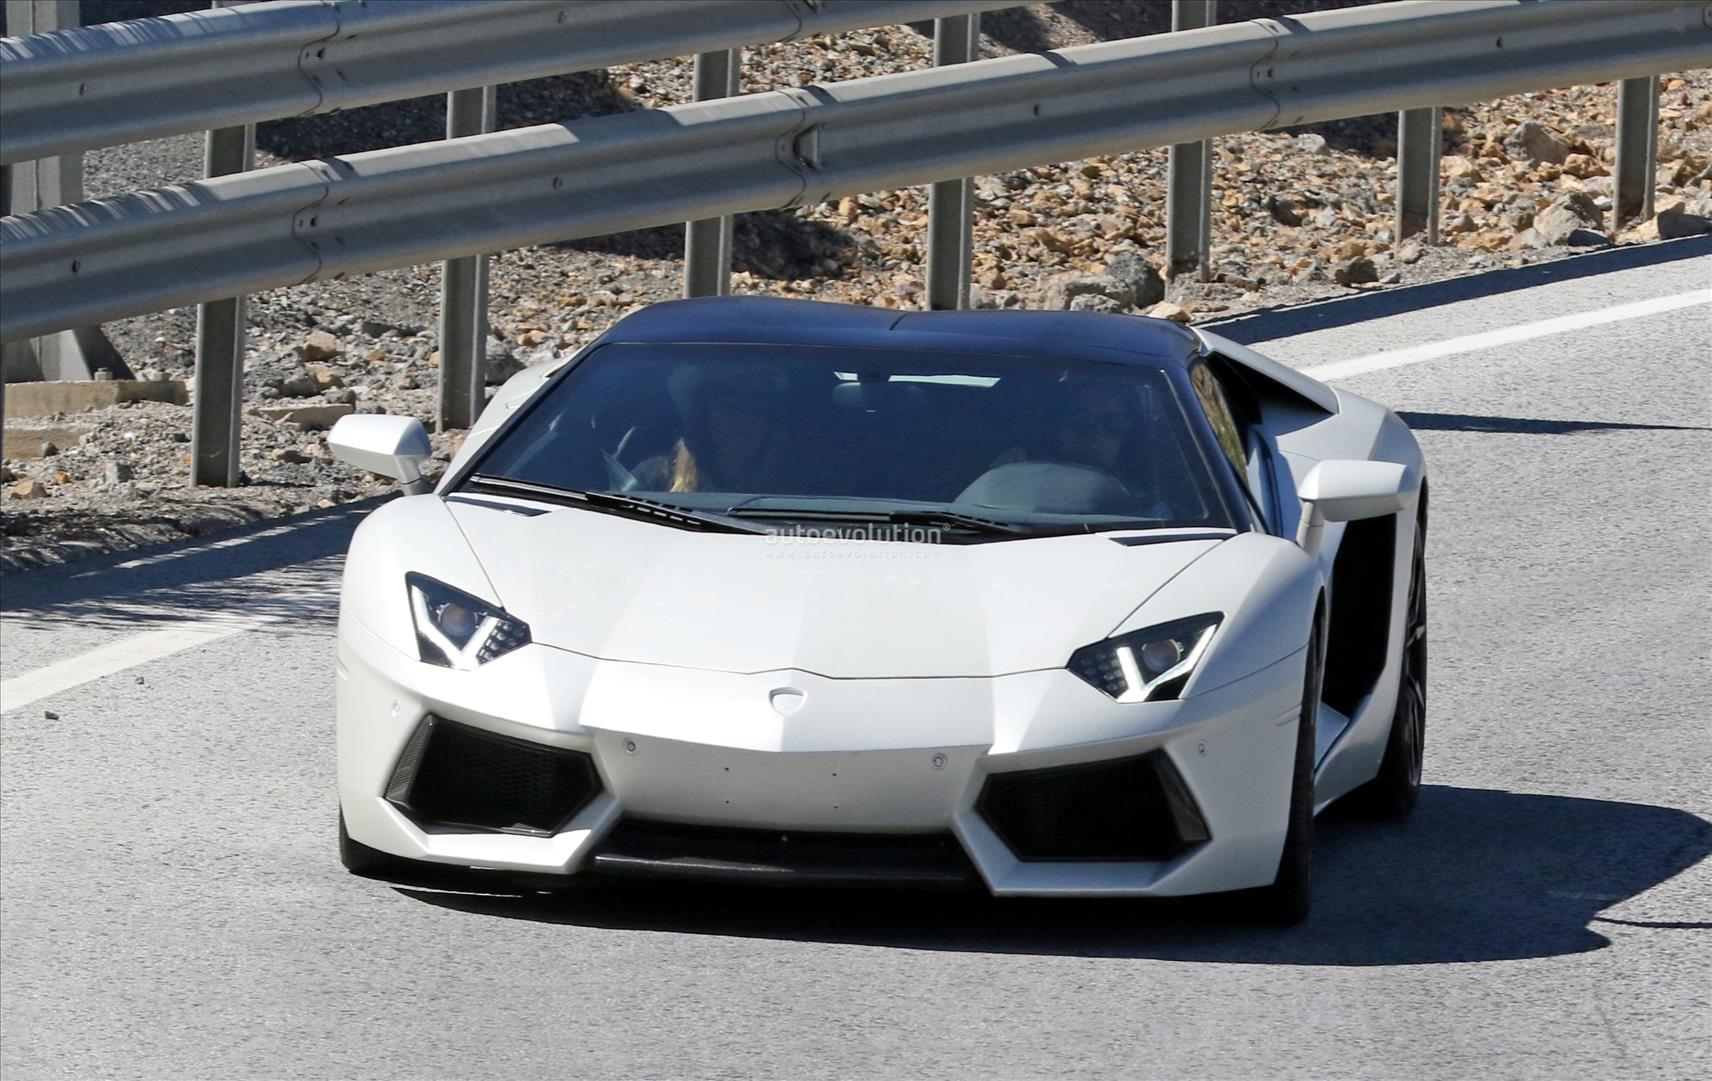 Spihunohet varianti i ri i Lamborghini Aventador